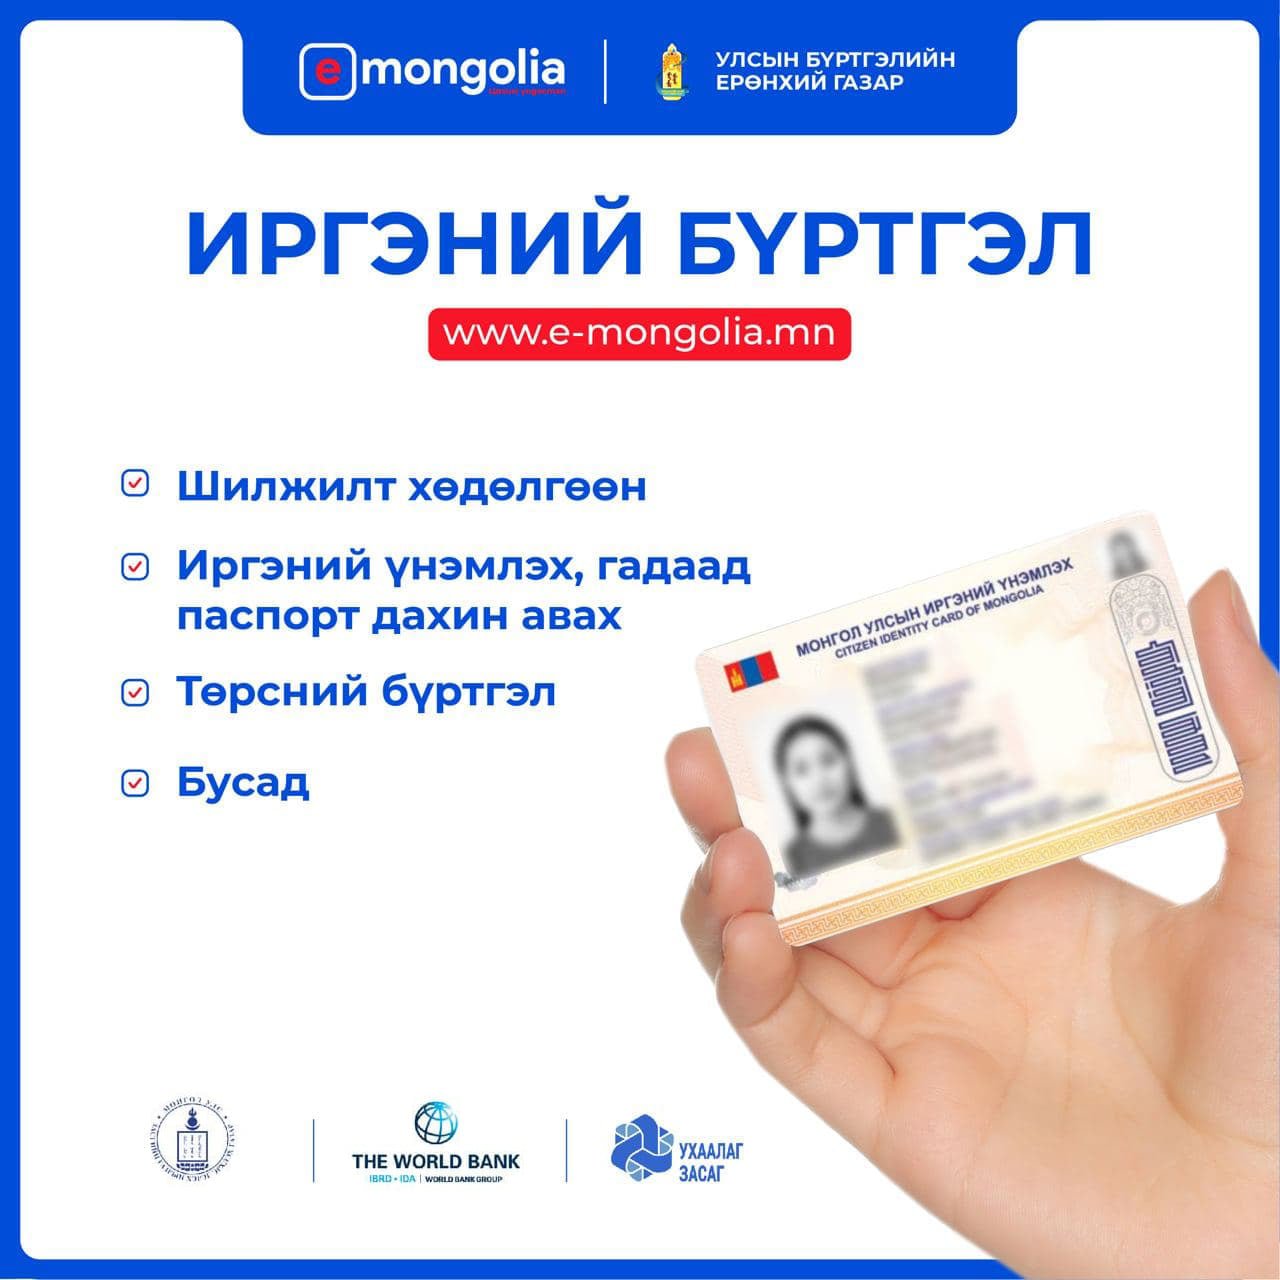 www.e-Mongolia.mn порталд нэгтгэсэн үйлчилгээнүүдтэй танилцана уу: 